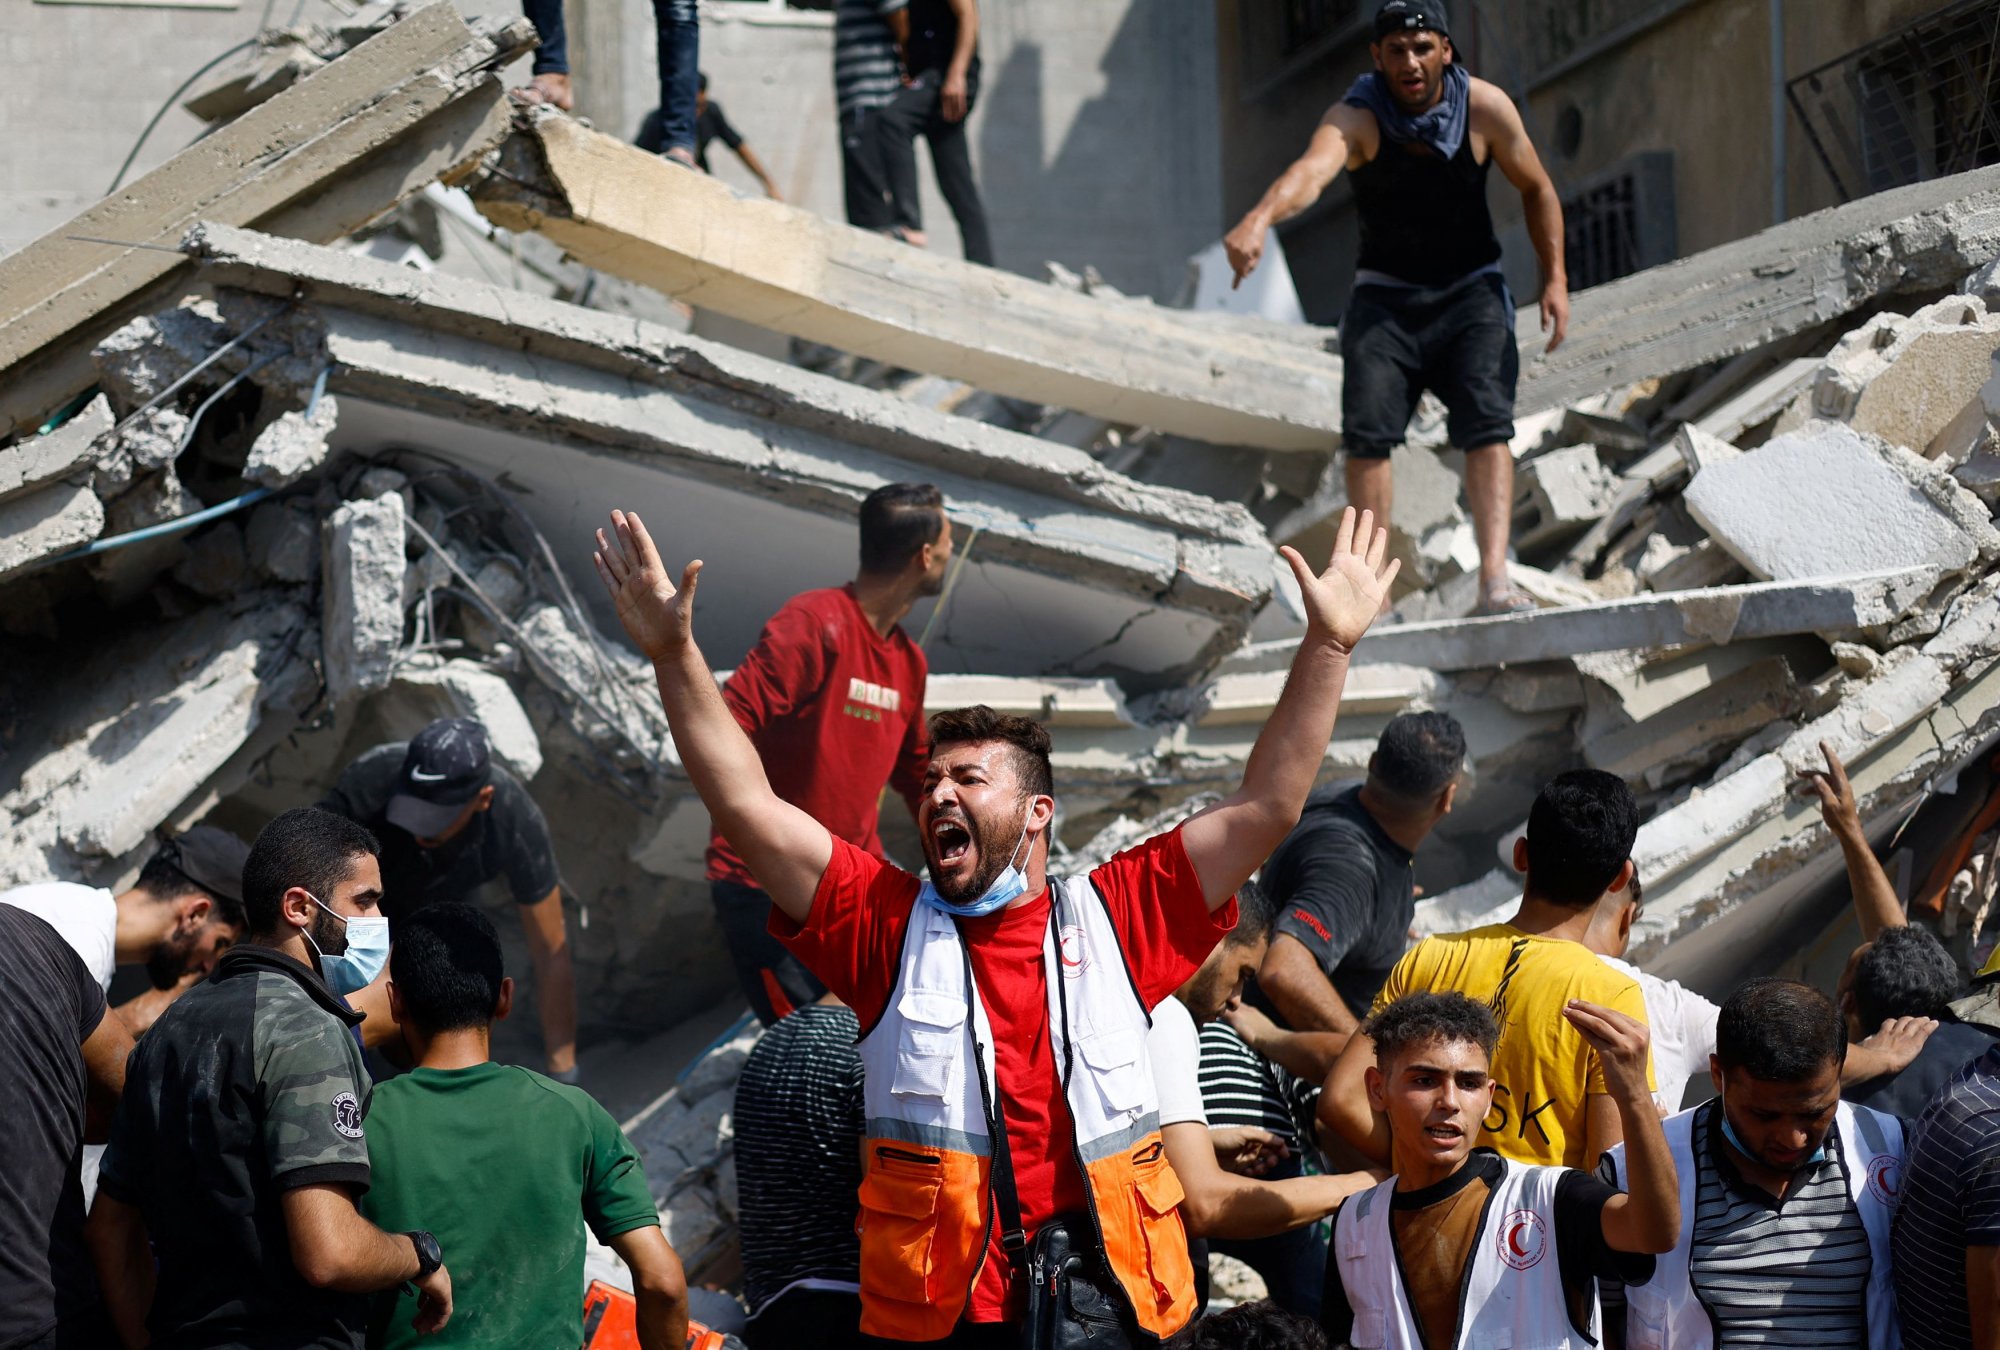 Γάζα: Το Ισραήλ ζητά άμεση εκκένωση του νοσοκομείου Αλ Κουντς, λέει η Ερυθρά Ημισέληνος